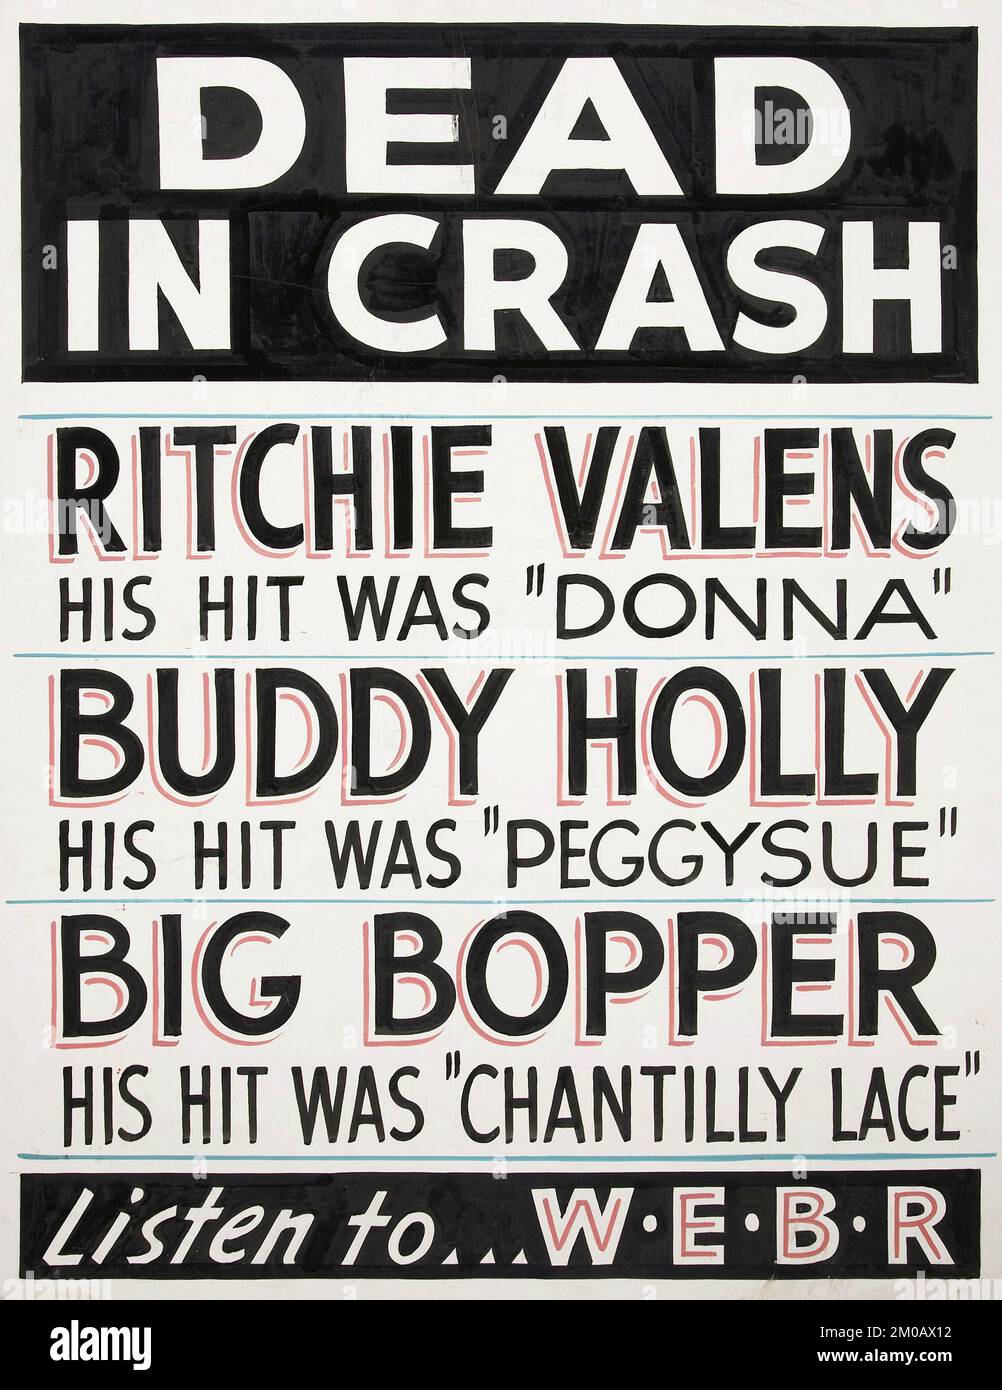 Affiche de panneau d'affichage - Buddy Holly, Ritchie Valens et Big Bopper Dead in Crash Poster (WEBR, 1959) Banque D'Images